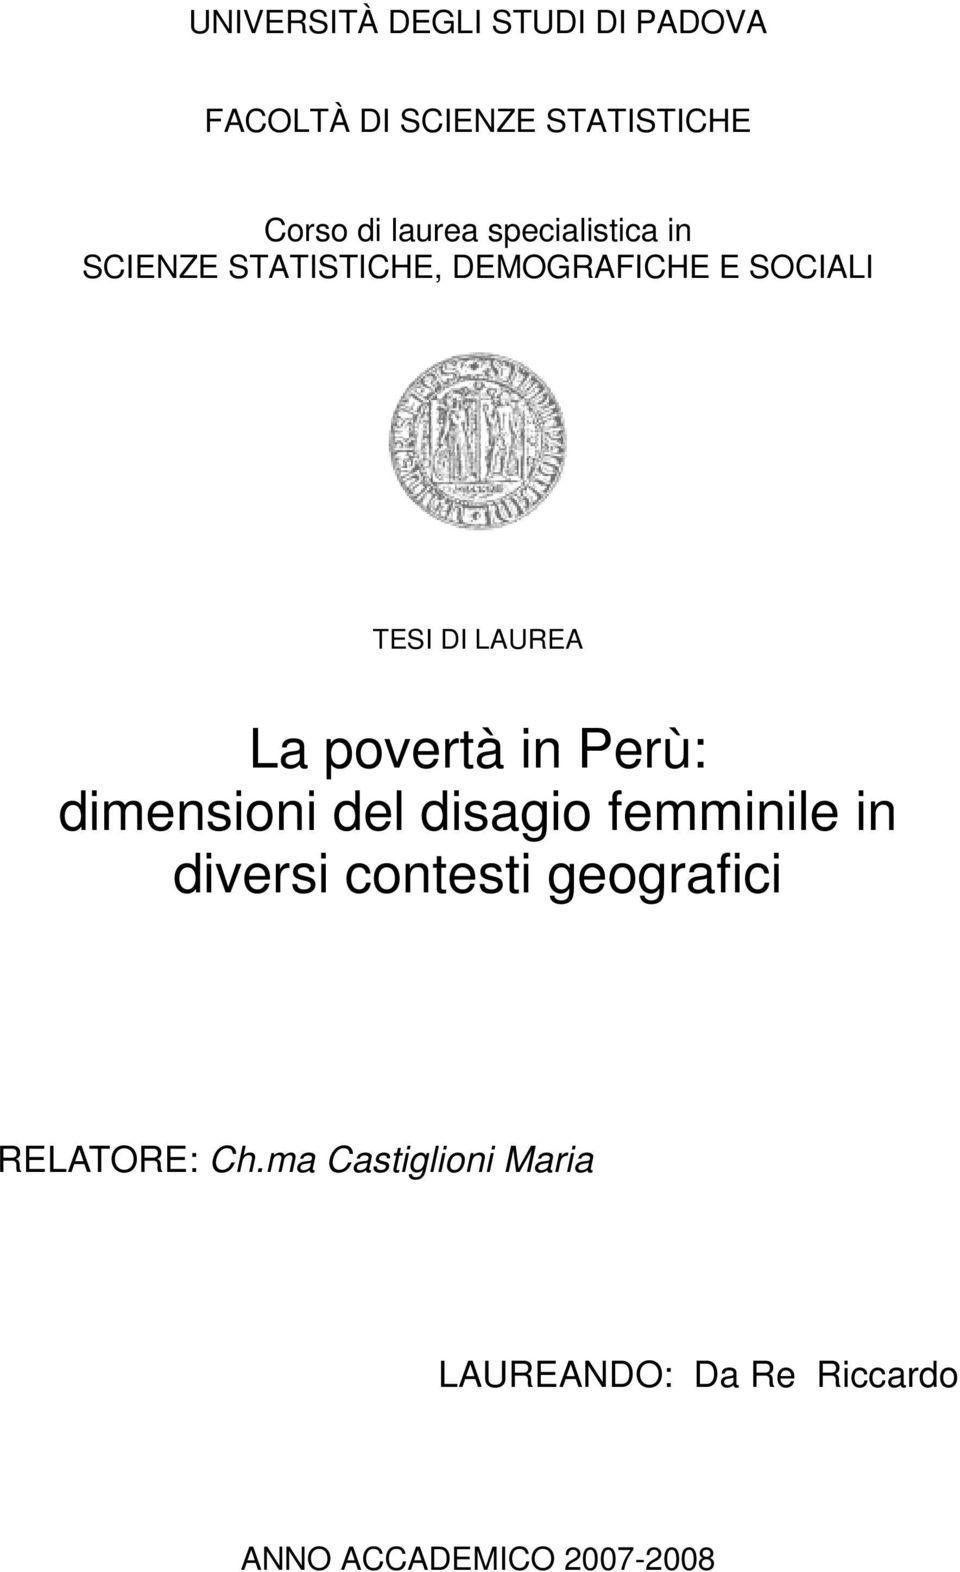 povertà in Perù: dimensioni del disagio femminile in diversi contesti geografici